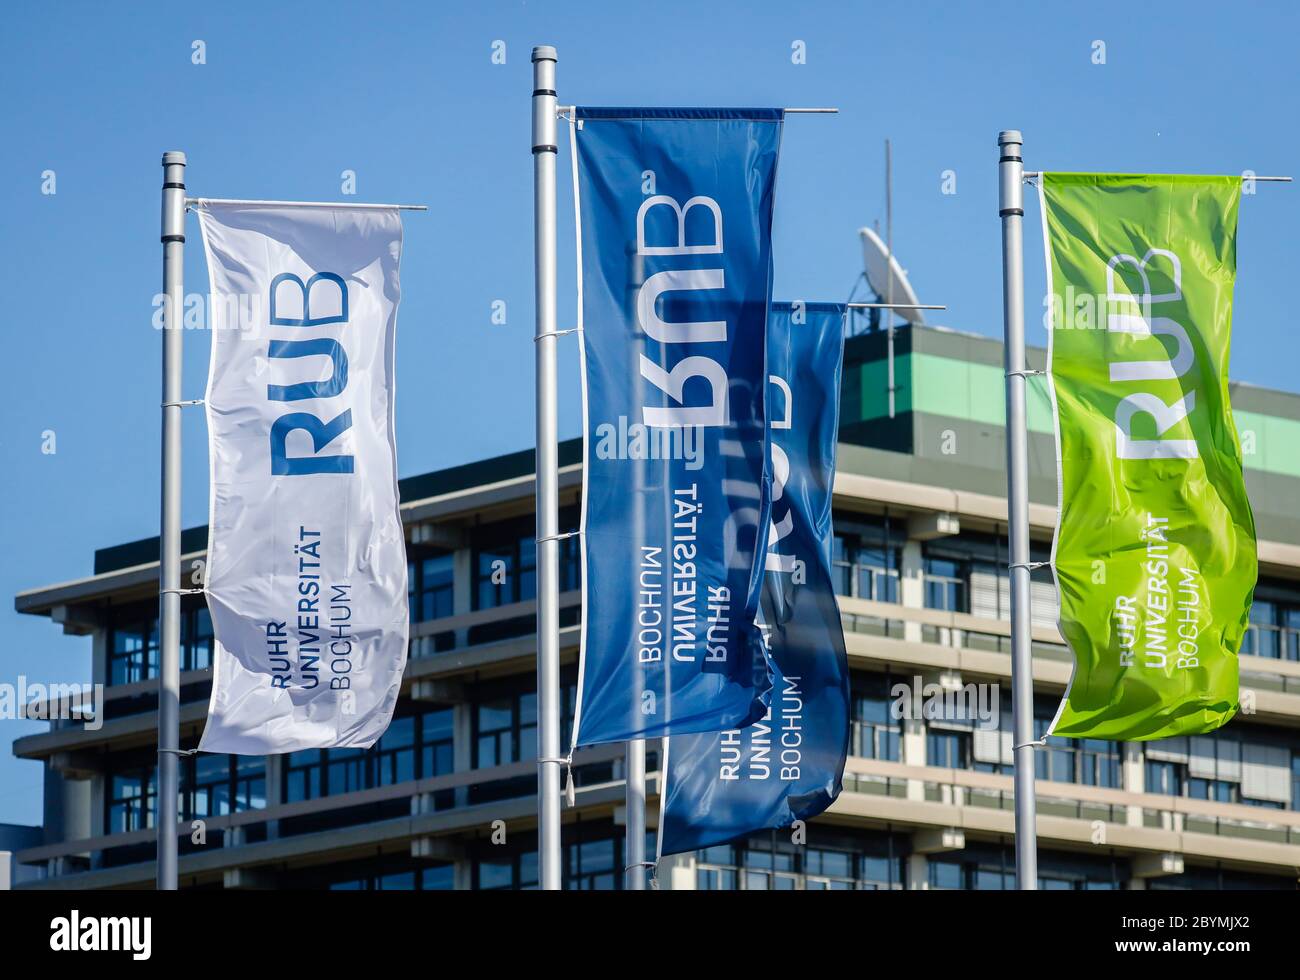 20.04.2020, Bochum, Nordrhein-Westfalen, Deutschland - RUB, Ruhr-Universität Bochum, Flaggen mit RUB-Logo auf dem Fahnenmast vor dem Universitätsgebäude Stockfoto